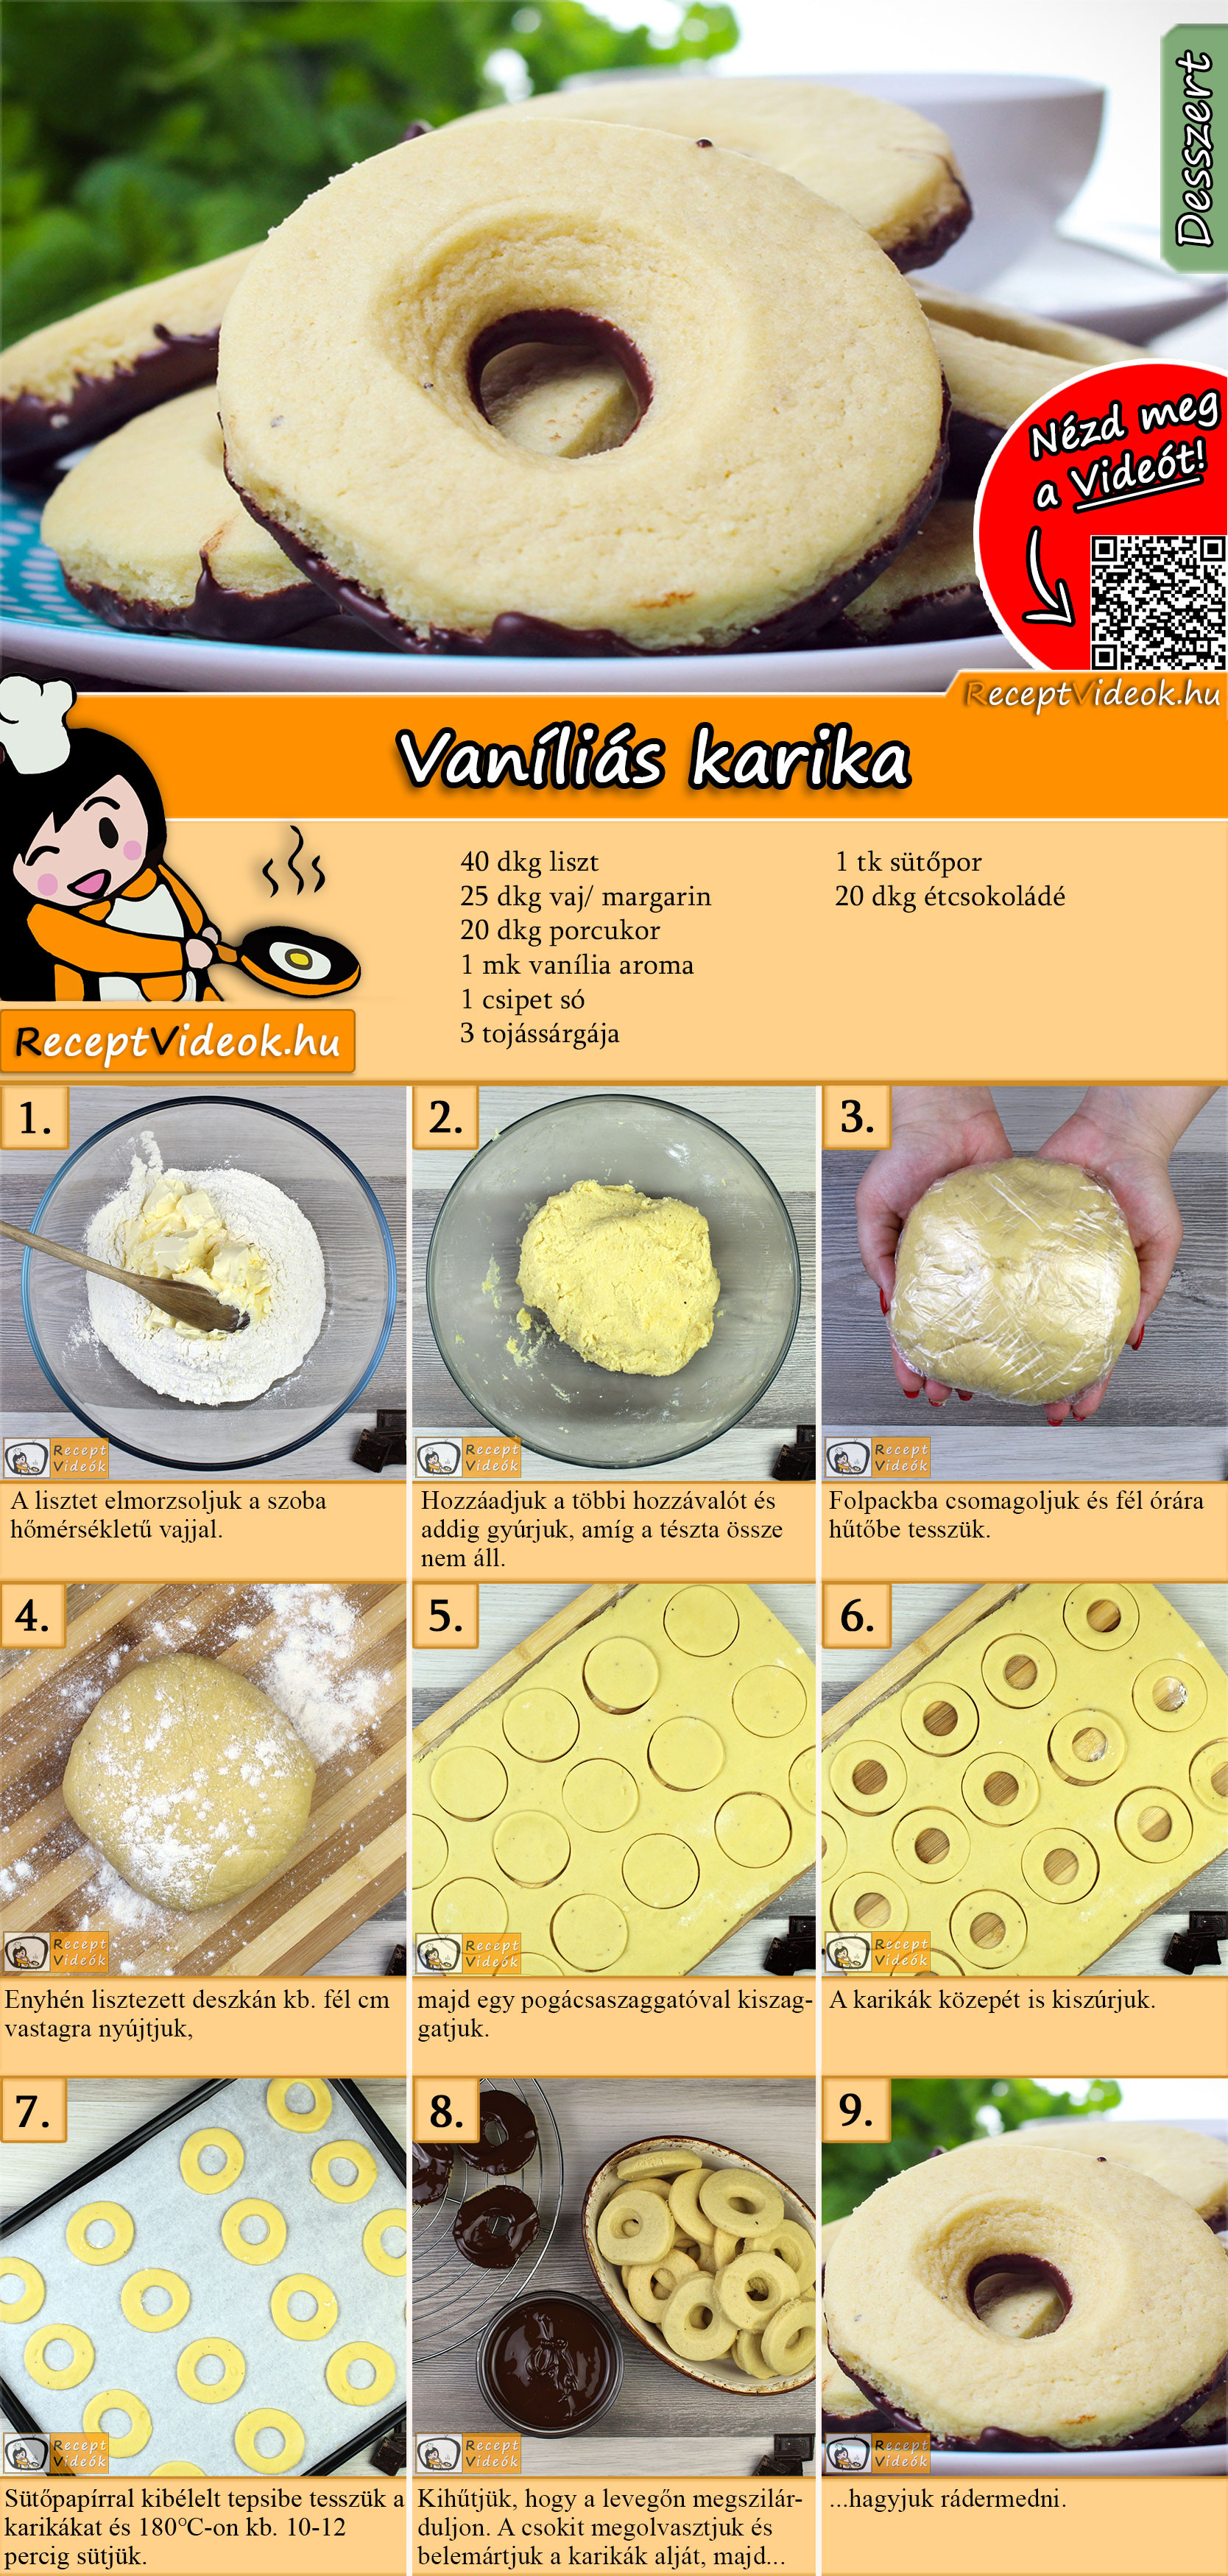 Vaníliás karika recept elkészítése videóval